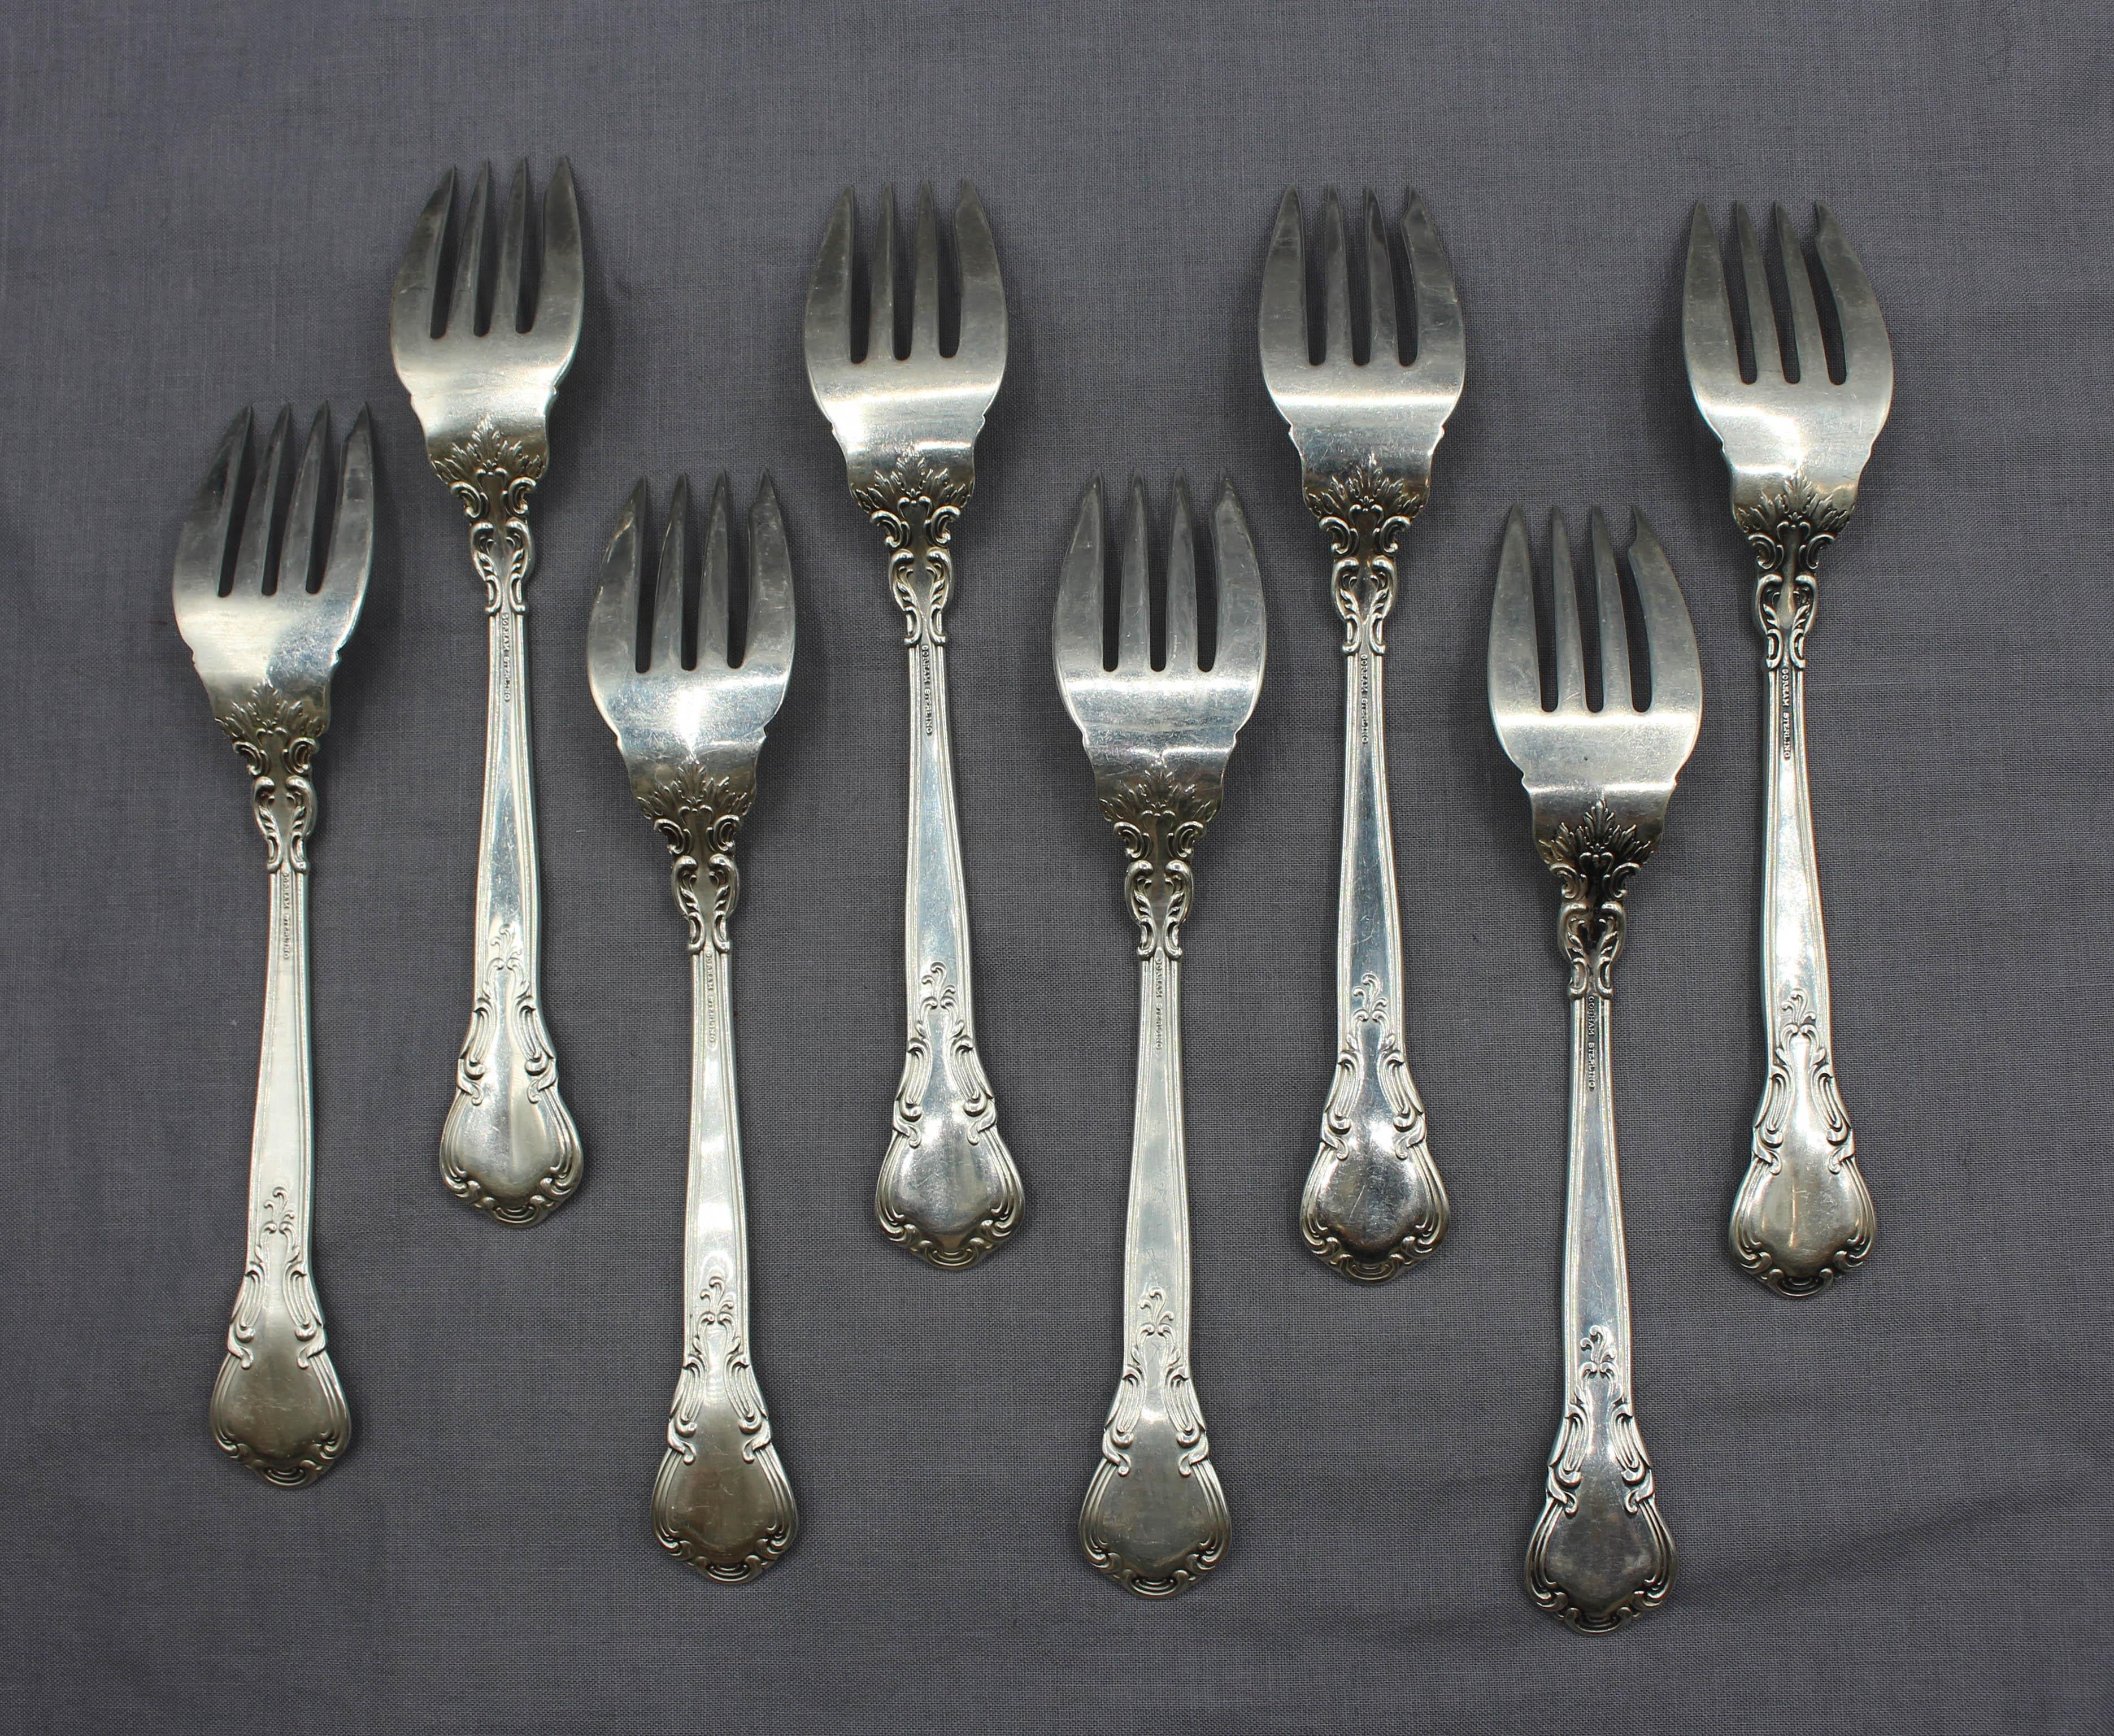 Set of 8 Chantilly sterling silver salad or dessert forks by Gorham. Never engraved. 9.70 troy oz.
6 3/8